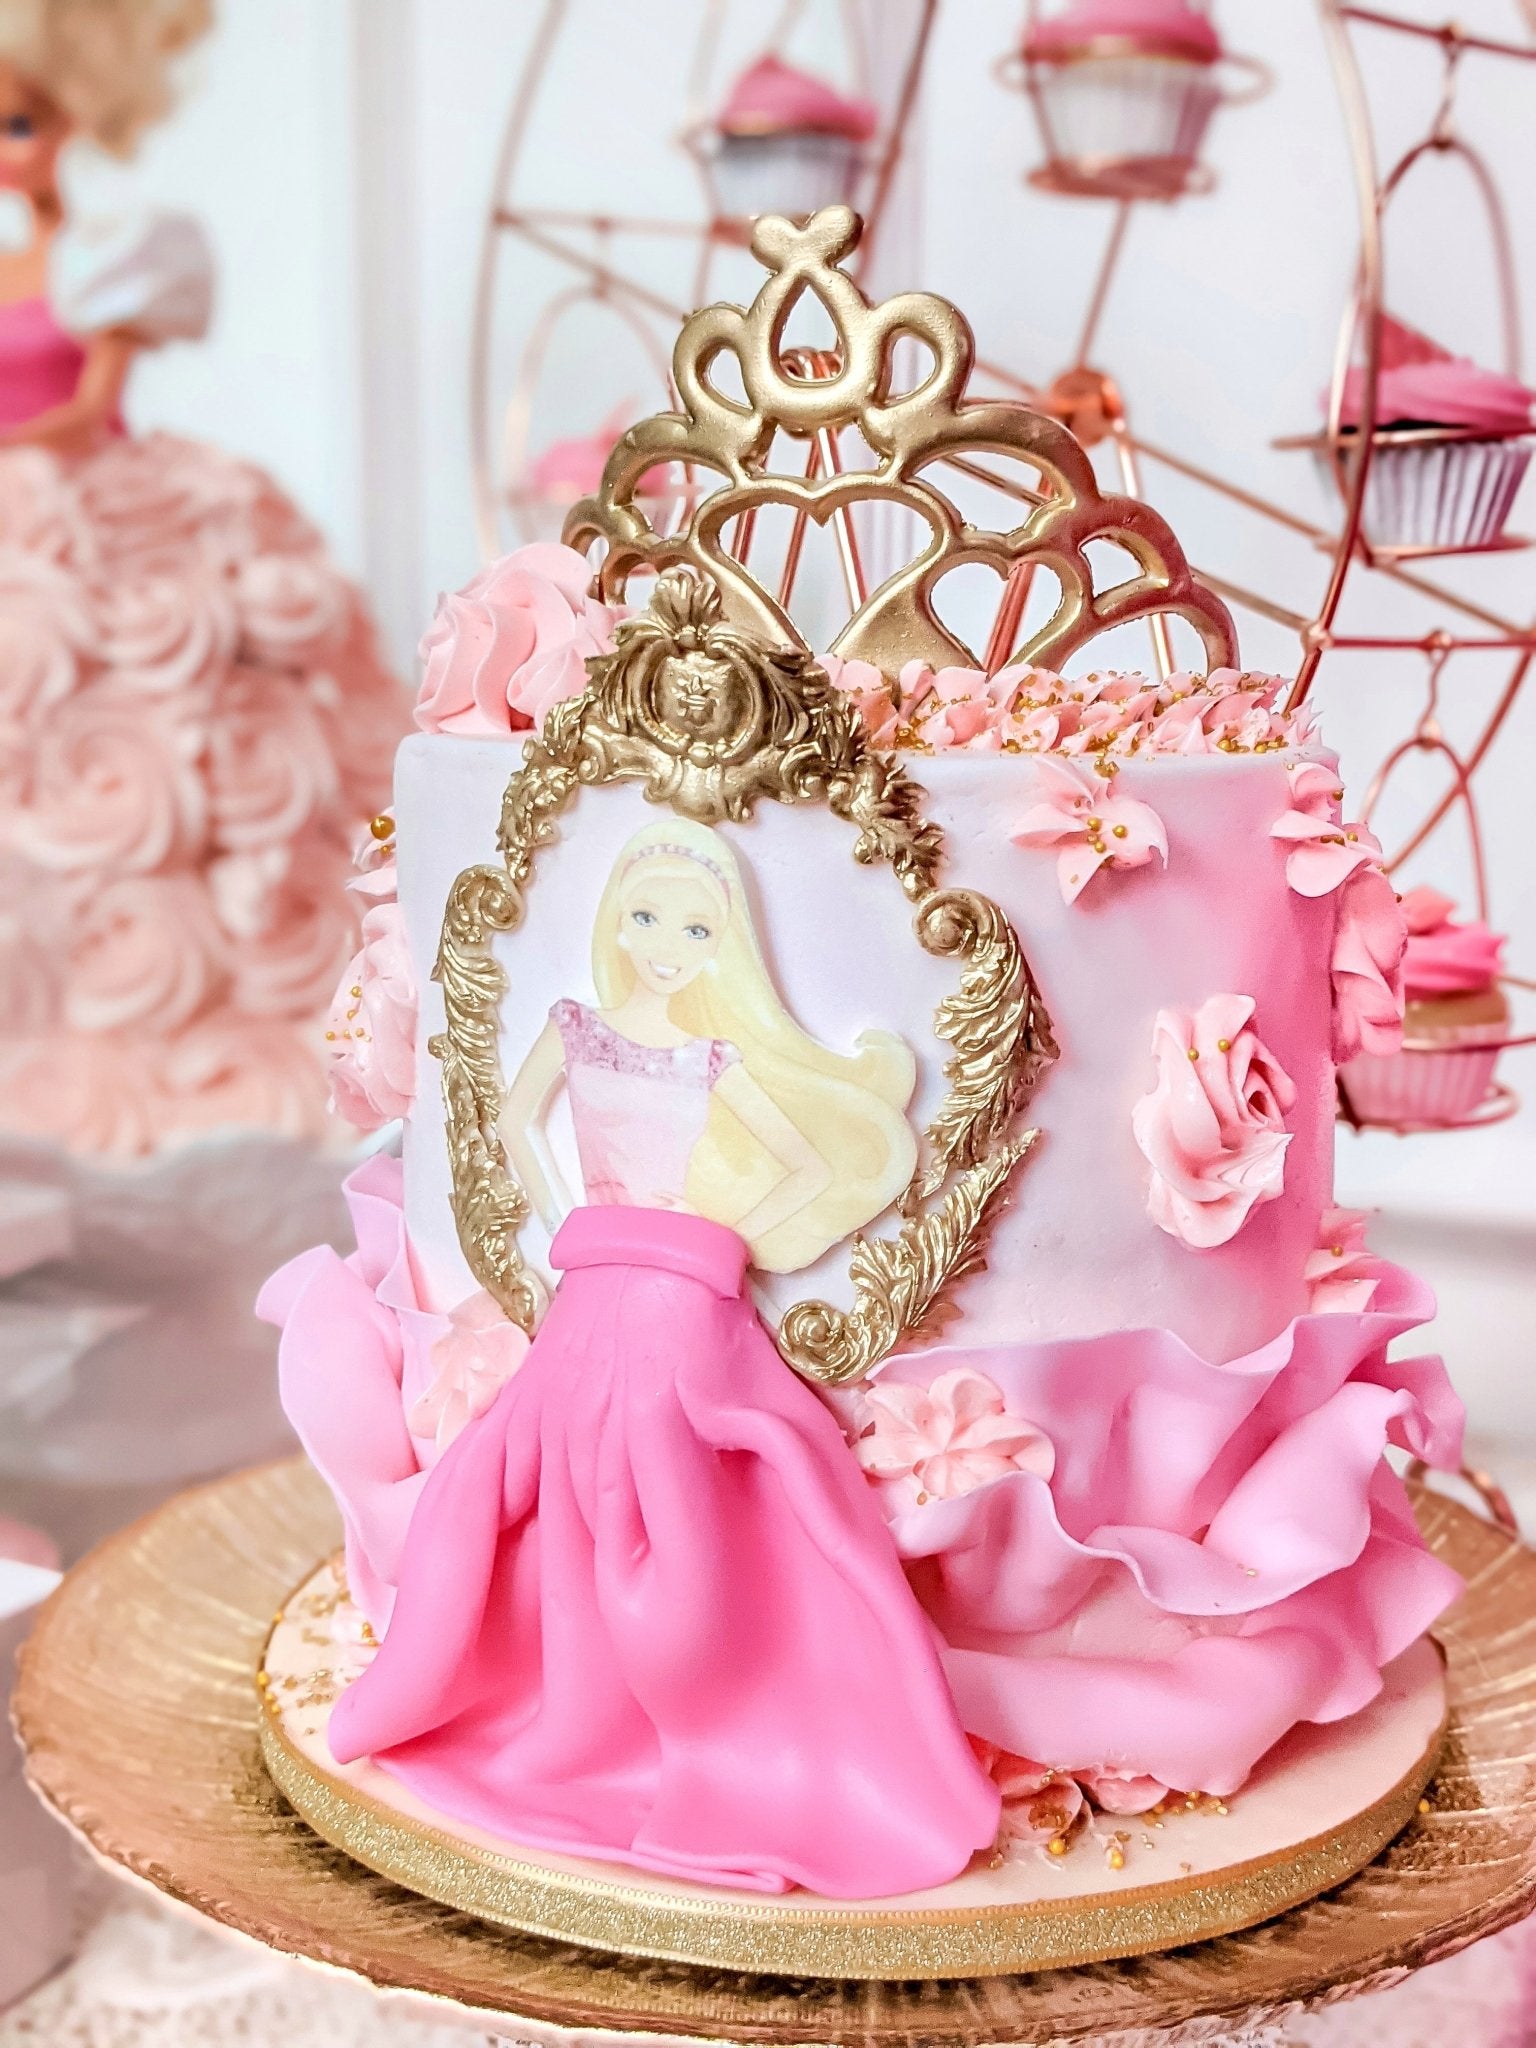 Barbie birthday cake with princess tiara/crown cake topper  Barbie  birthday cake, Pink birthday cakes, Barbie birthday party